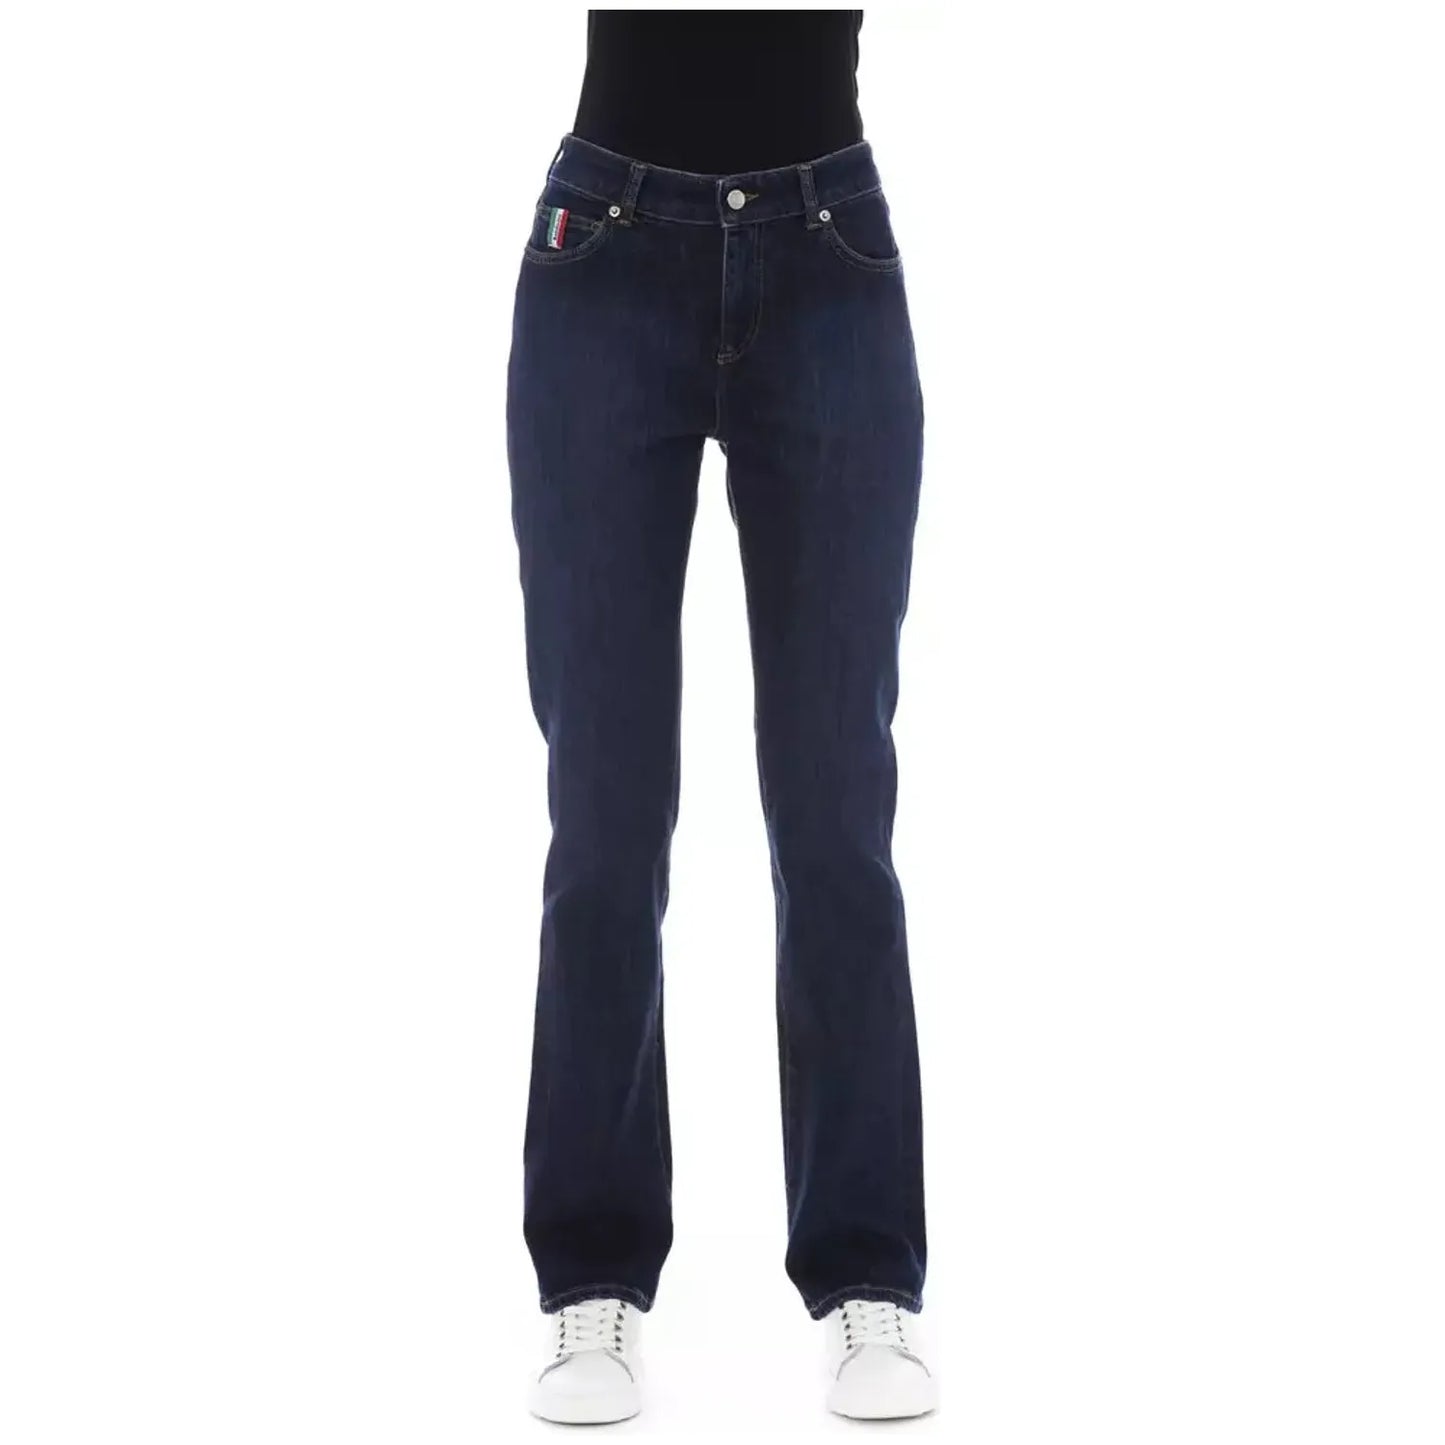 Baldinini Trend Chic Blue Cotton Blend Jeans with Tricolor Detail blue-cotton-jeans-pant-164